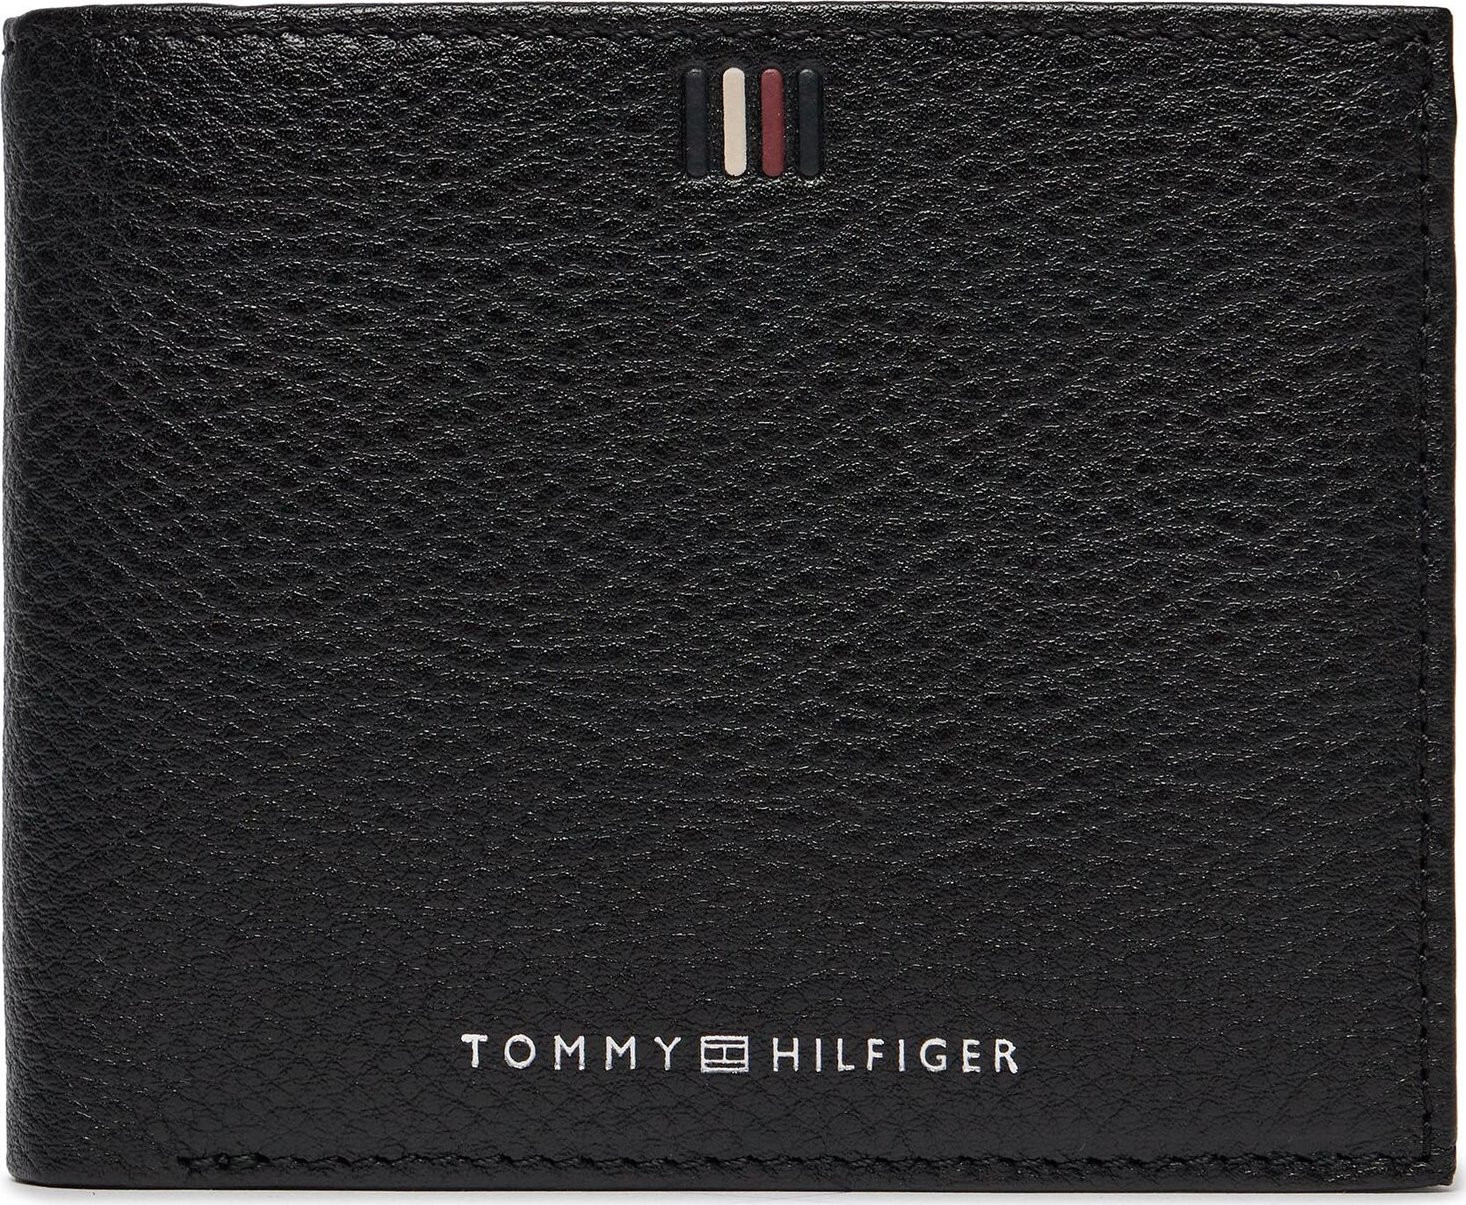 Velká pánská peněženka Tommy Hilfiger Th Central Cc Flap And Coin AM0AM11856 Černá